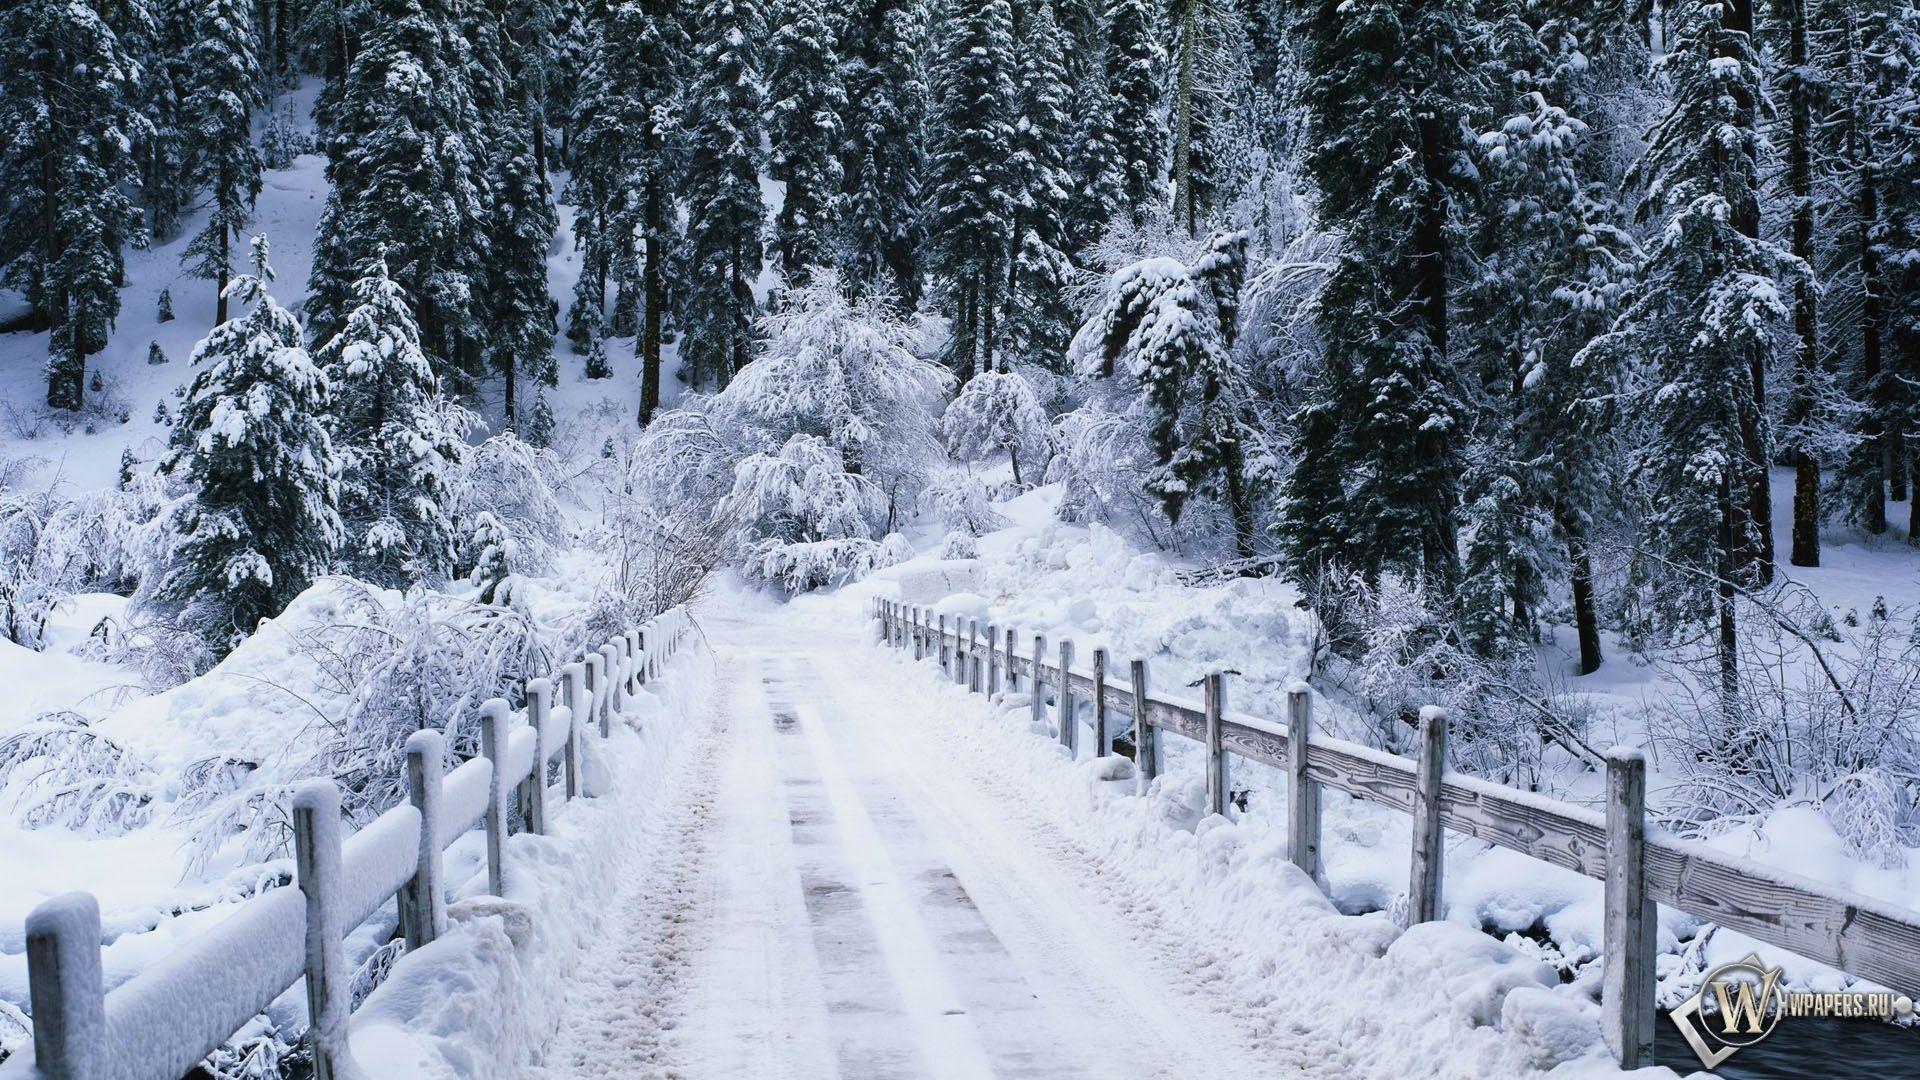 Скачать обои Snowy bridge (Зима, Снег, Лес, Мост, Ели) для рабочего стола  1920х1080 (16:9) бесплатно, Фото Snowy … | Paysage de neige, Image de  neige, Scène d'hiver